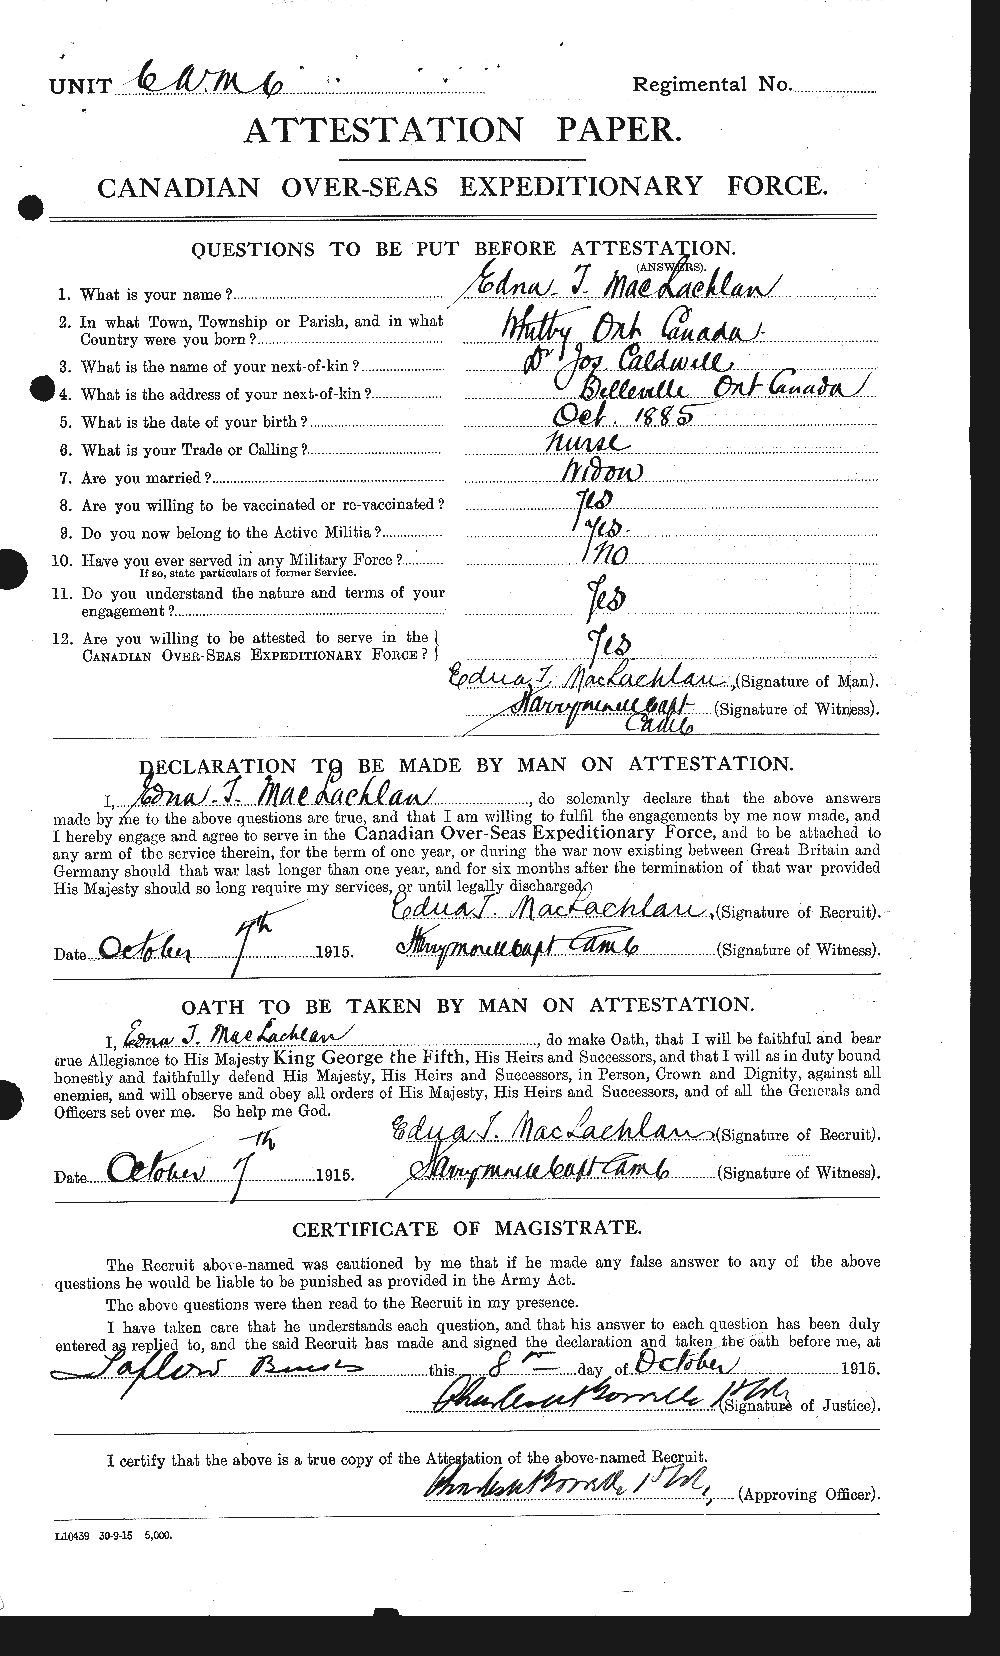 Dossiers du Personnel de la Première Guerre mondiale - CEC 533853a